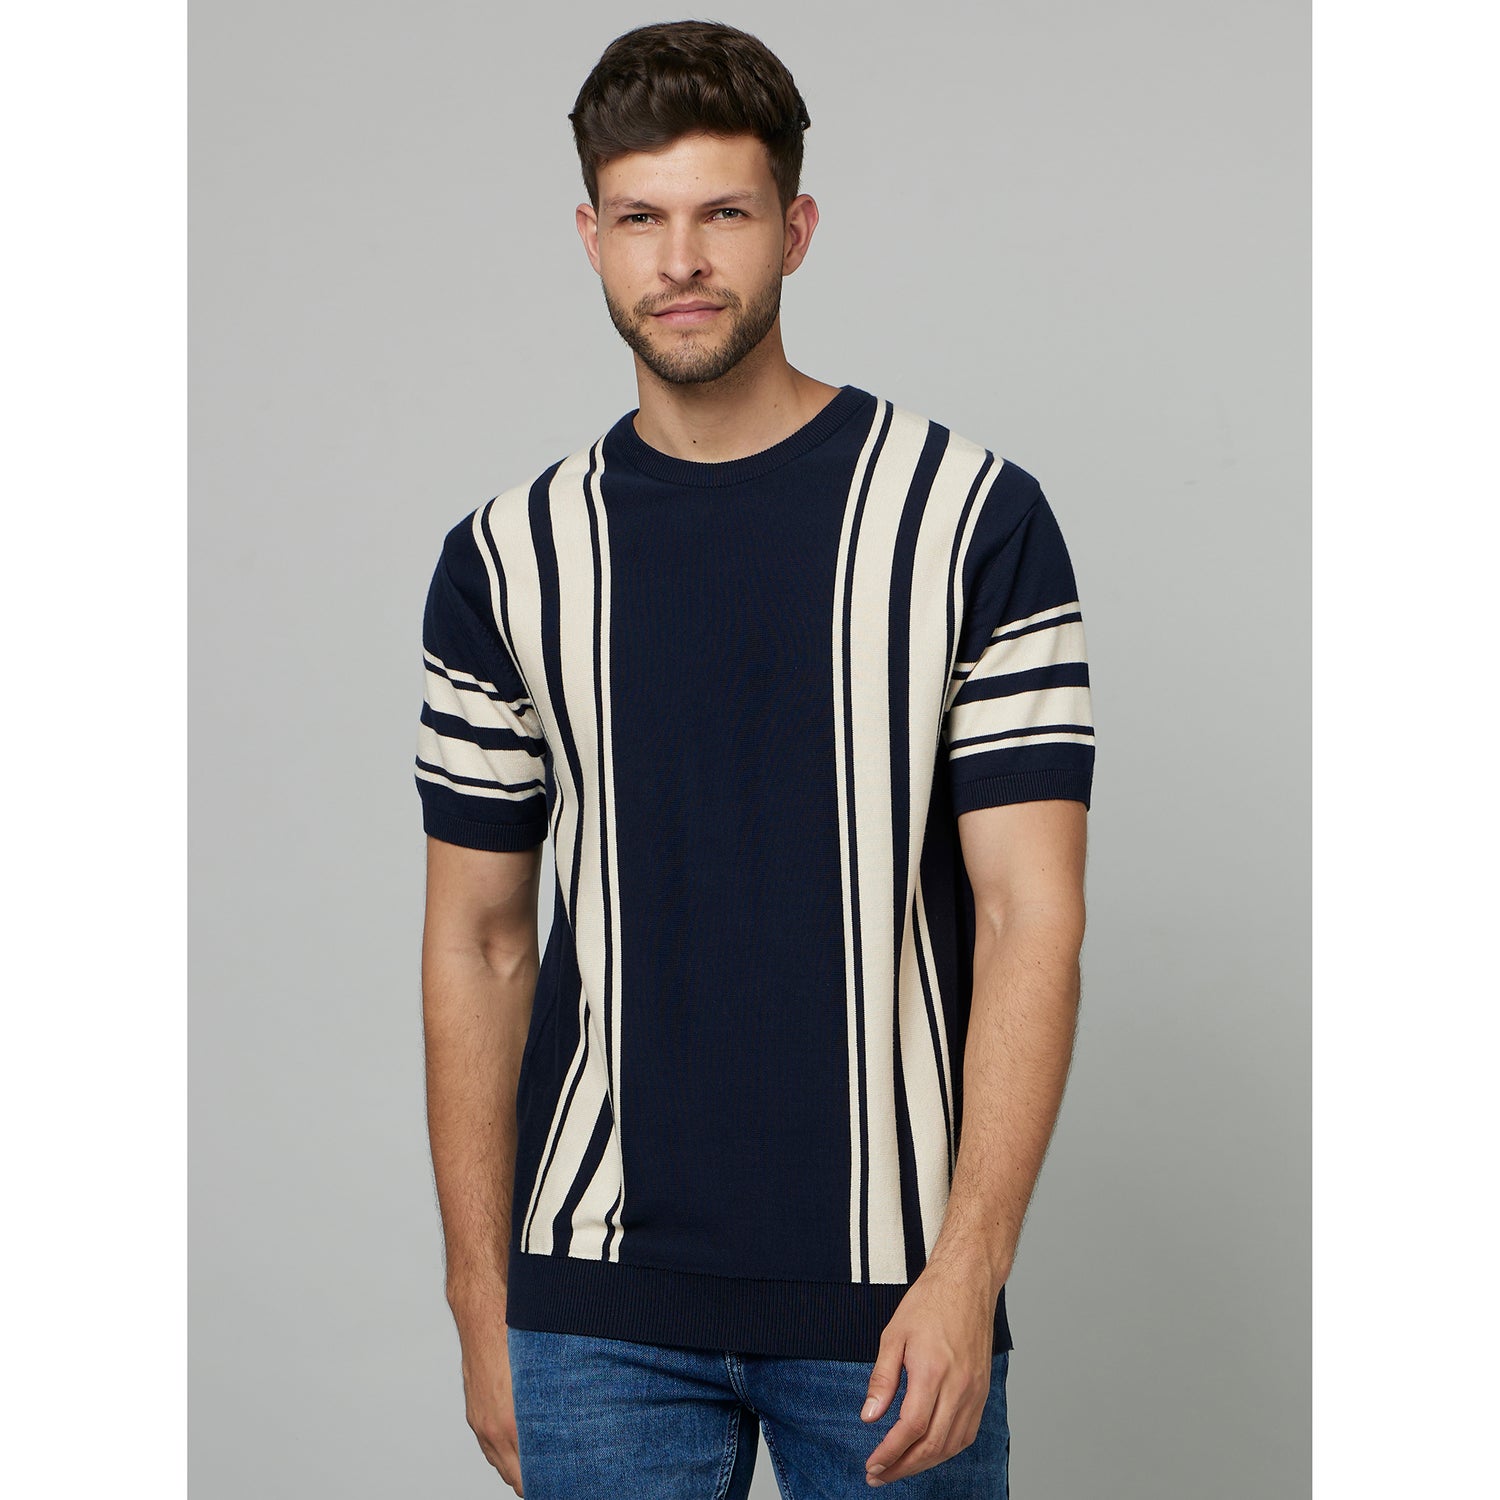 Navy Blue Striped Cotton T-shirt (FECREWFL2)